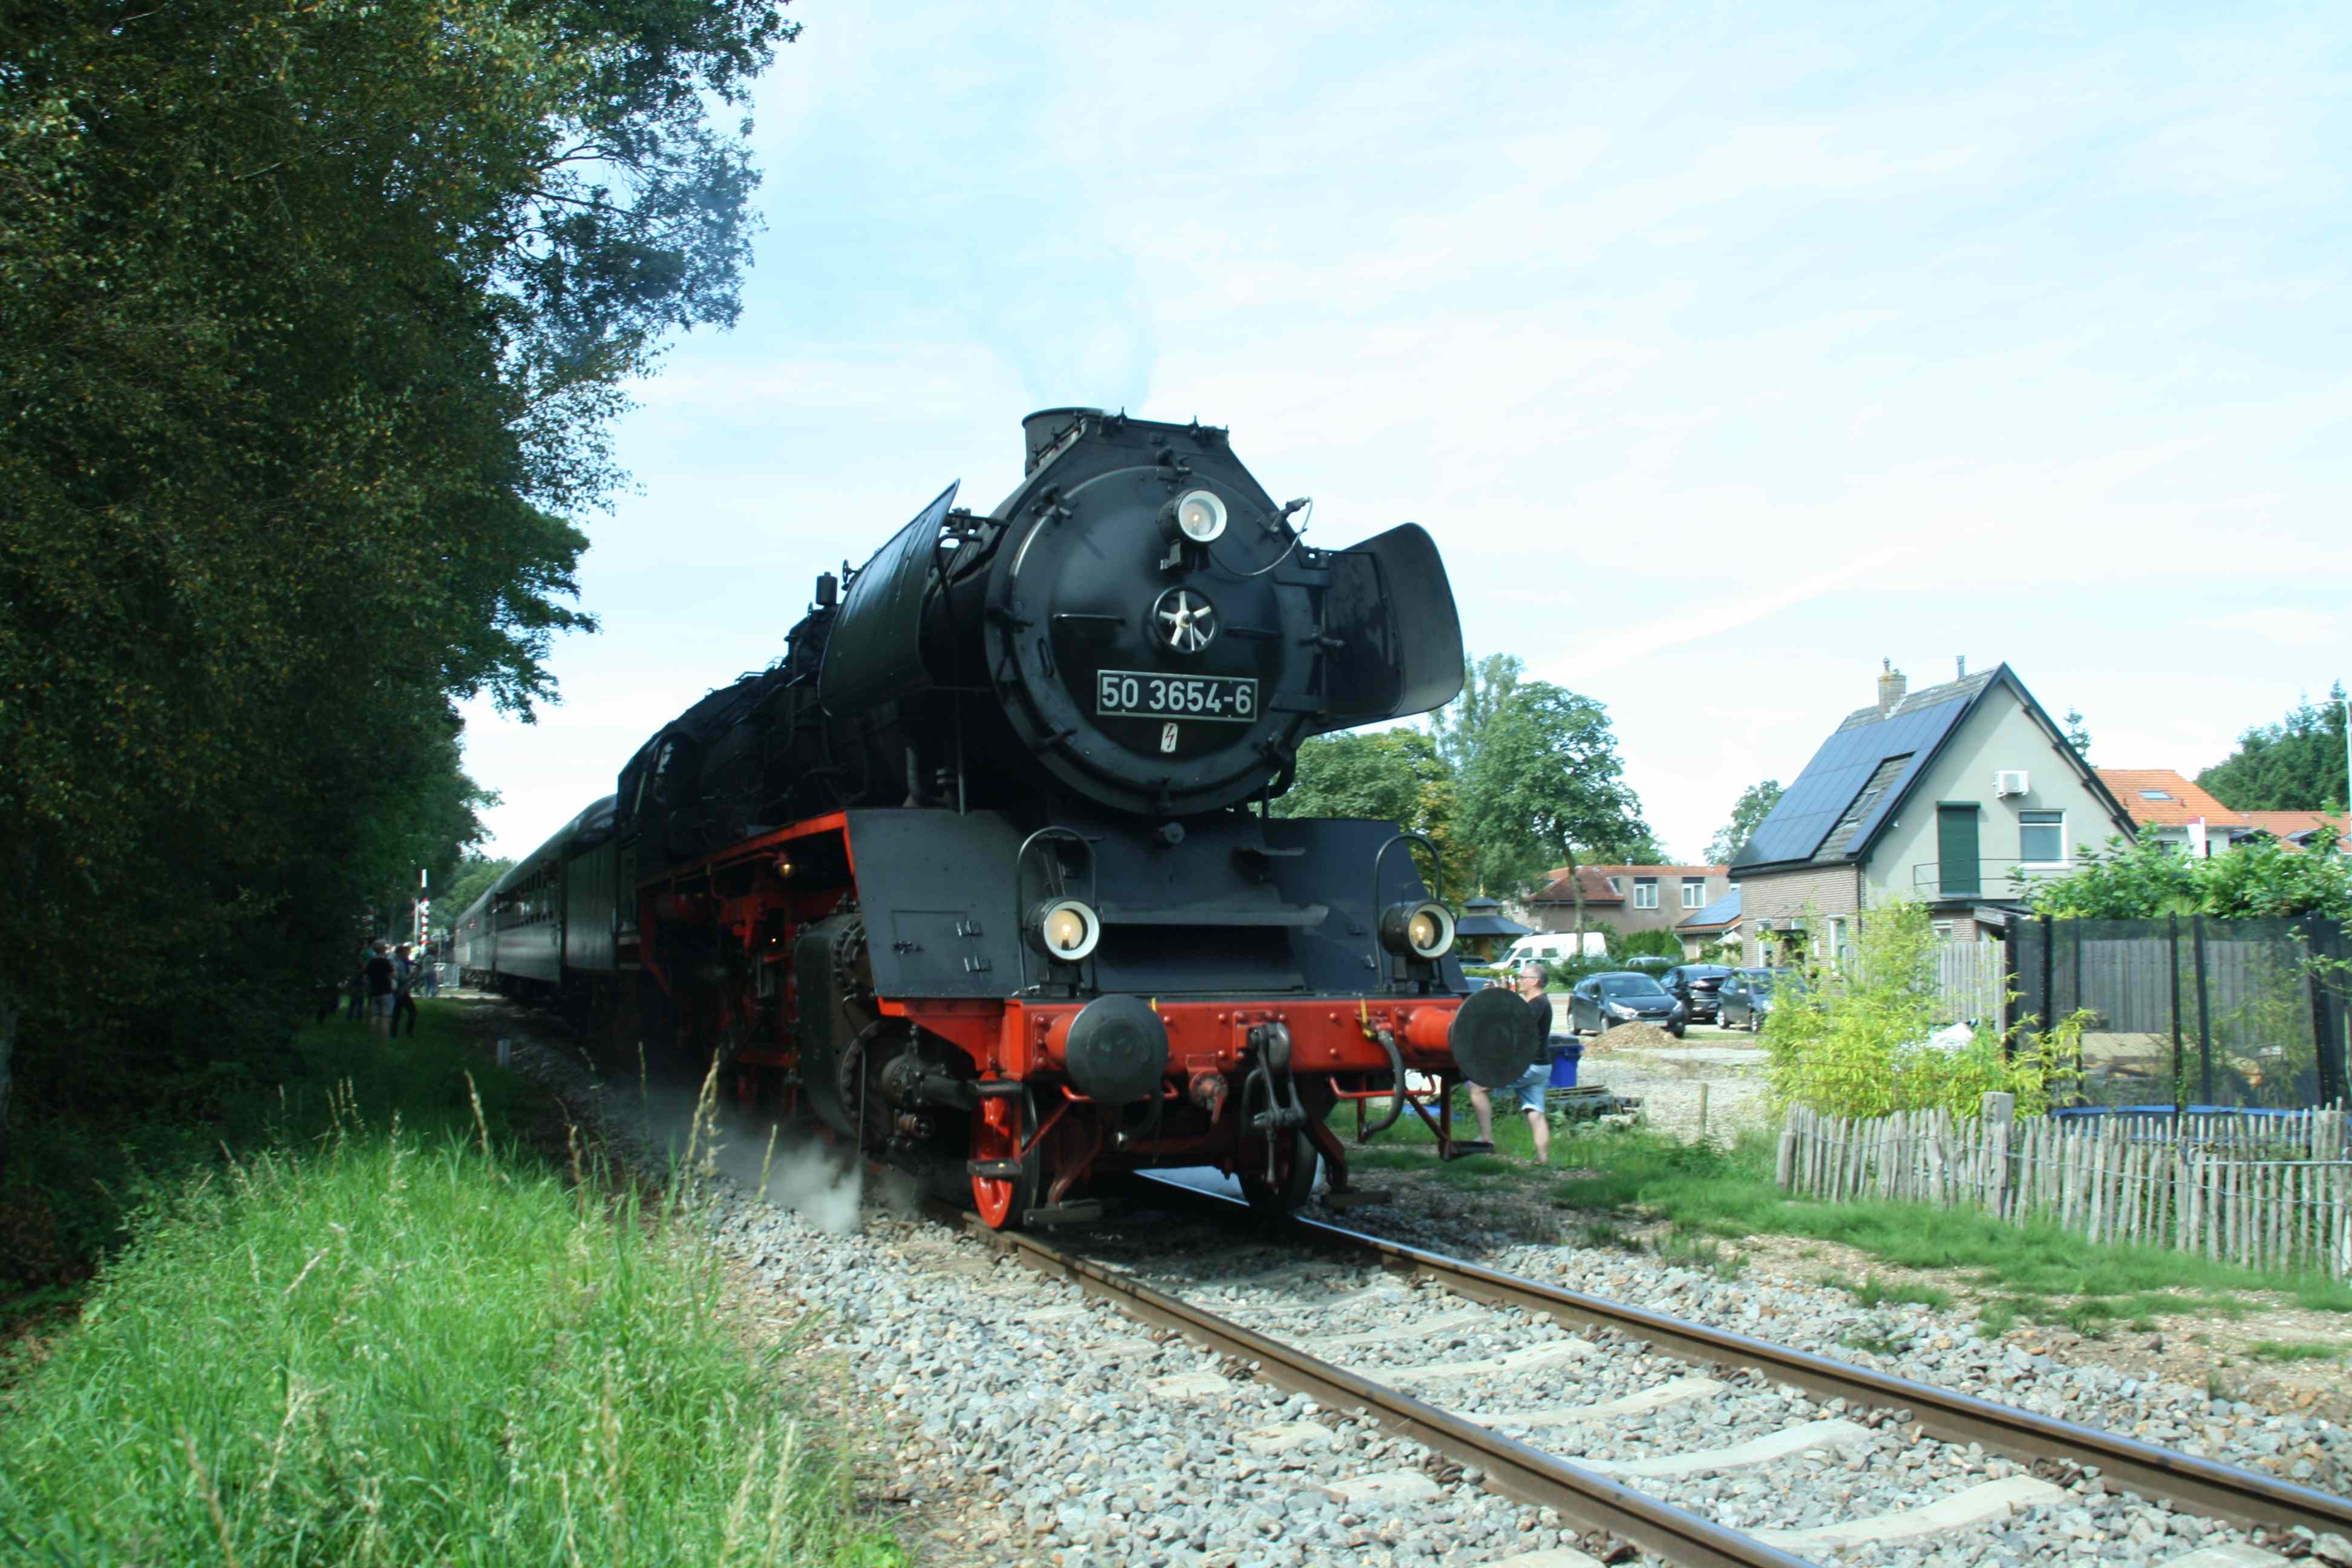 230903 383 Loenen Bf Dampflok VSM ex DR 50 3654 mit Zug 57 von Loenen nach Dieren am Bahnsteig komp